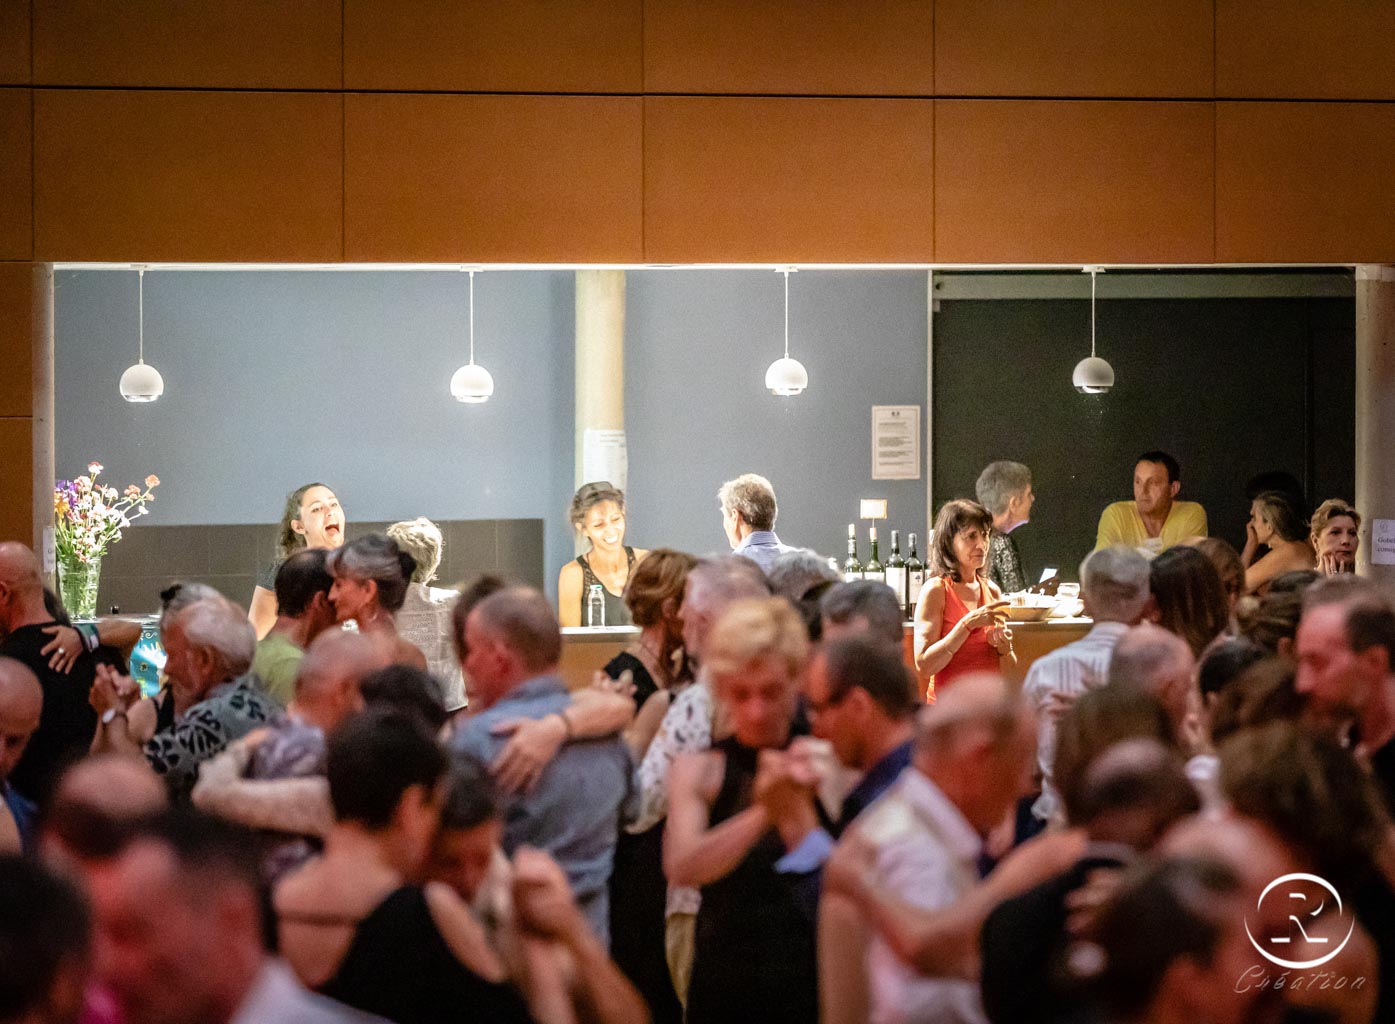 Festival du 17ème Festival de Tango Saint Geniez d'Olt